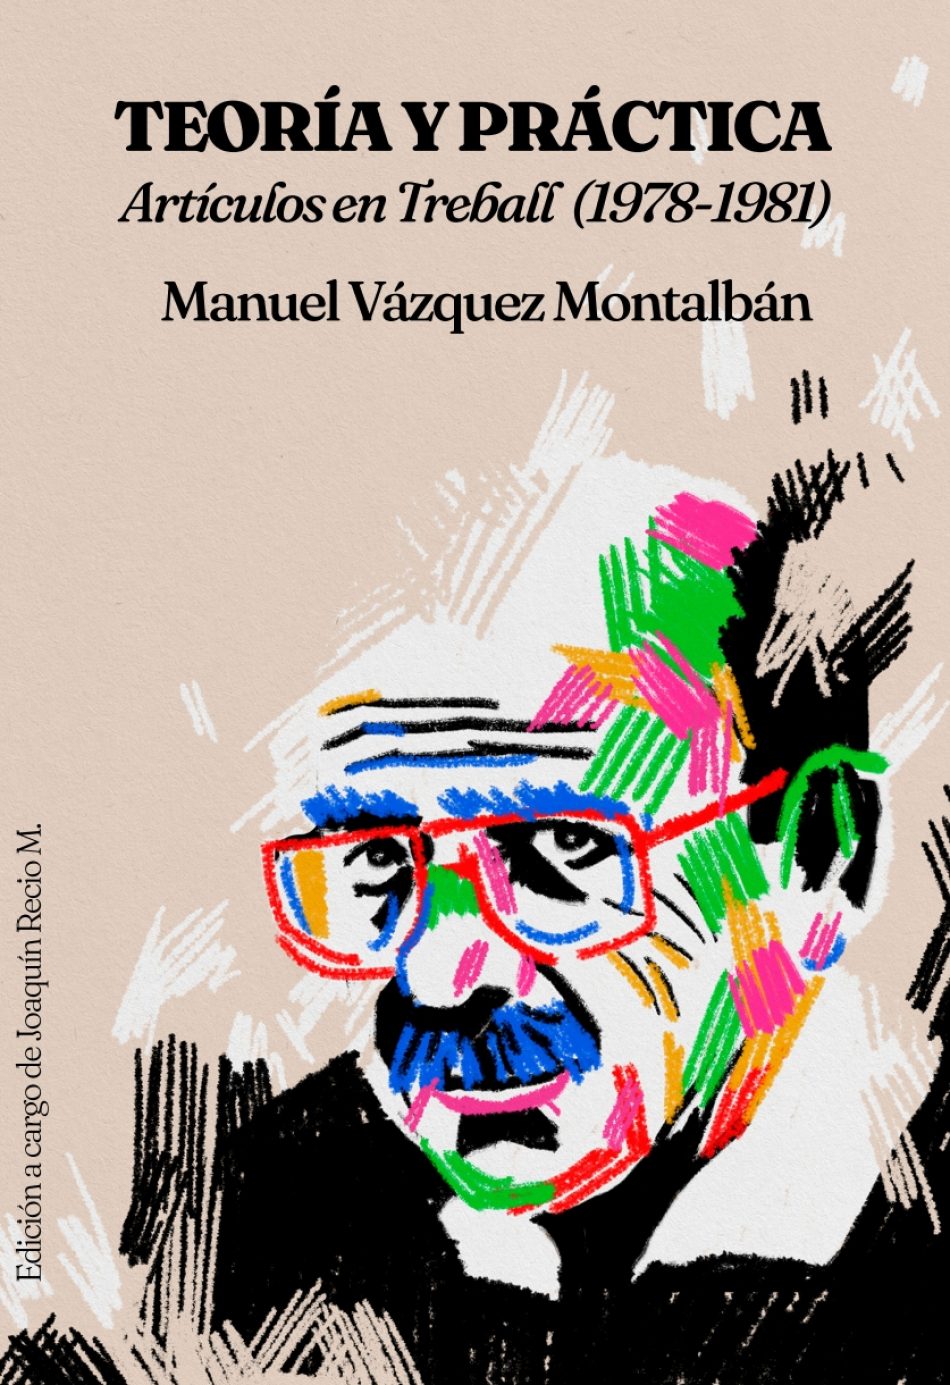 «Teoría y crítica», el nuevo libro inédito de Manuel Vázquez Montalbán